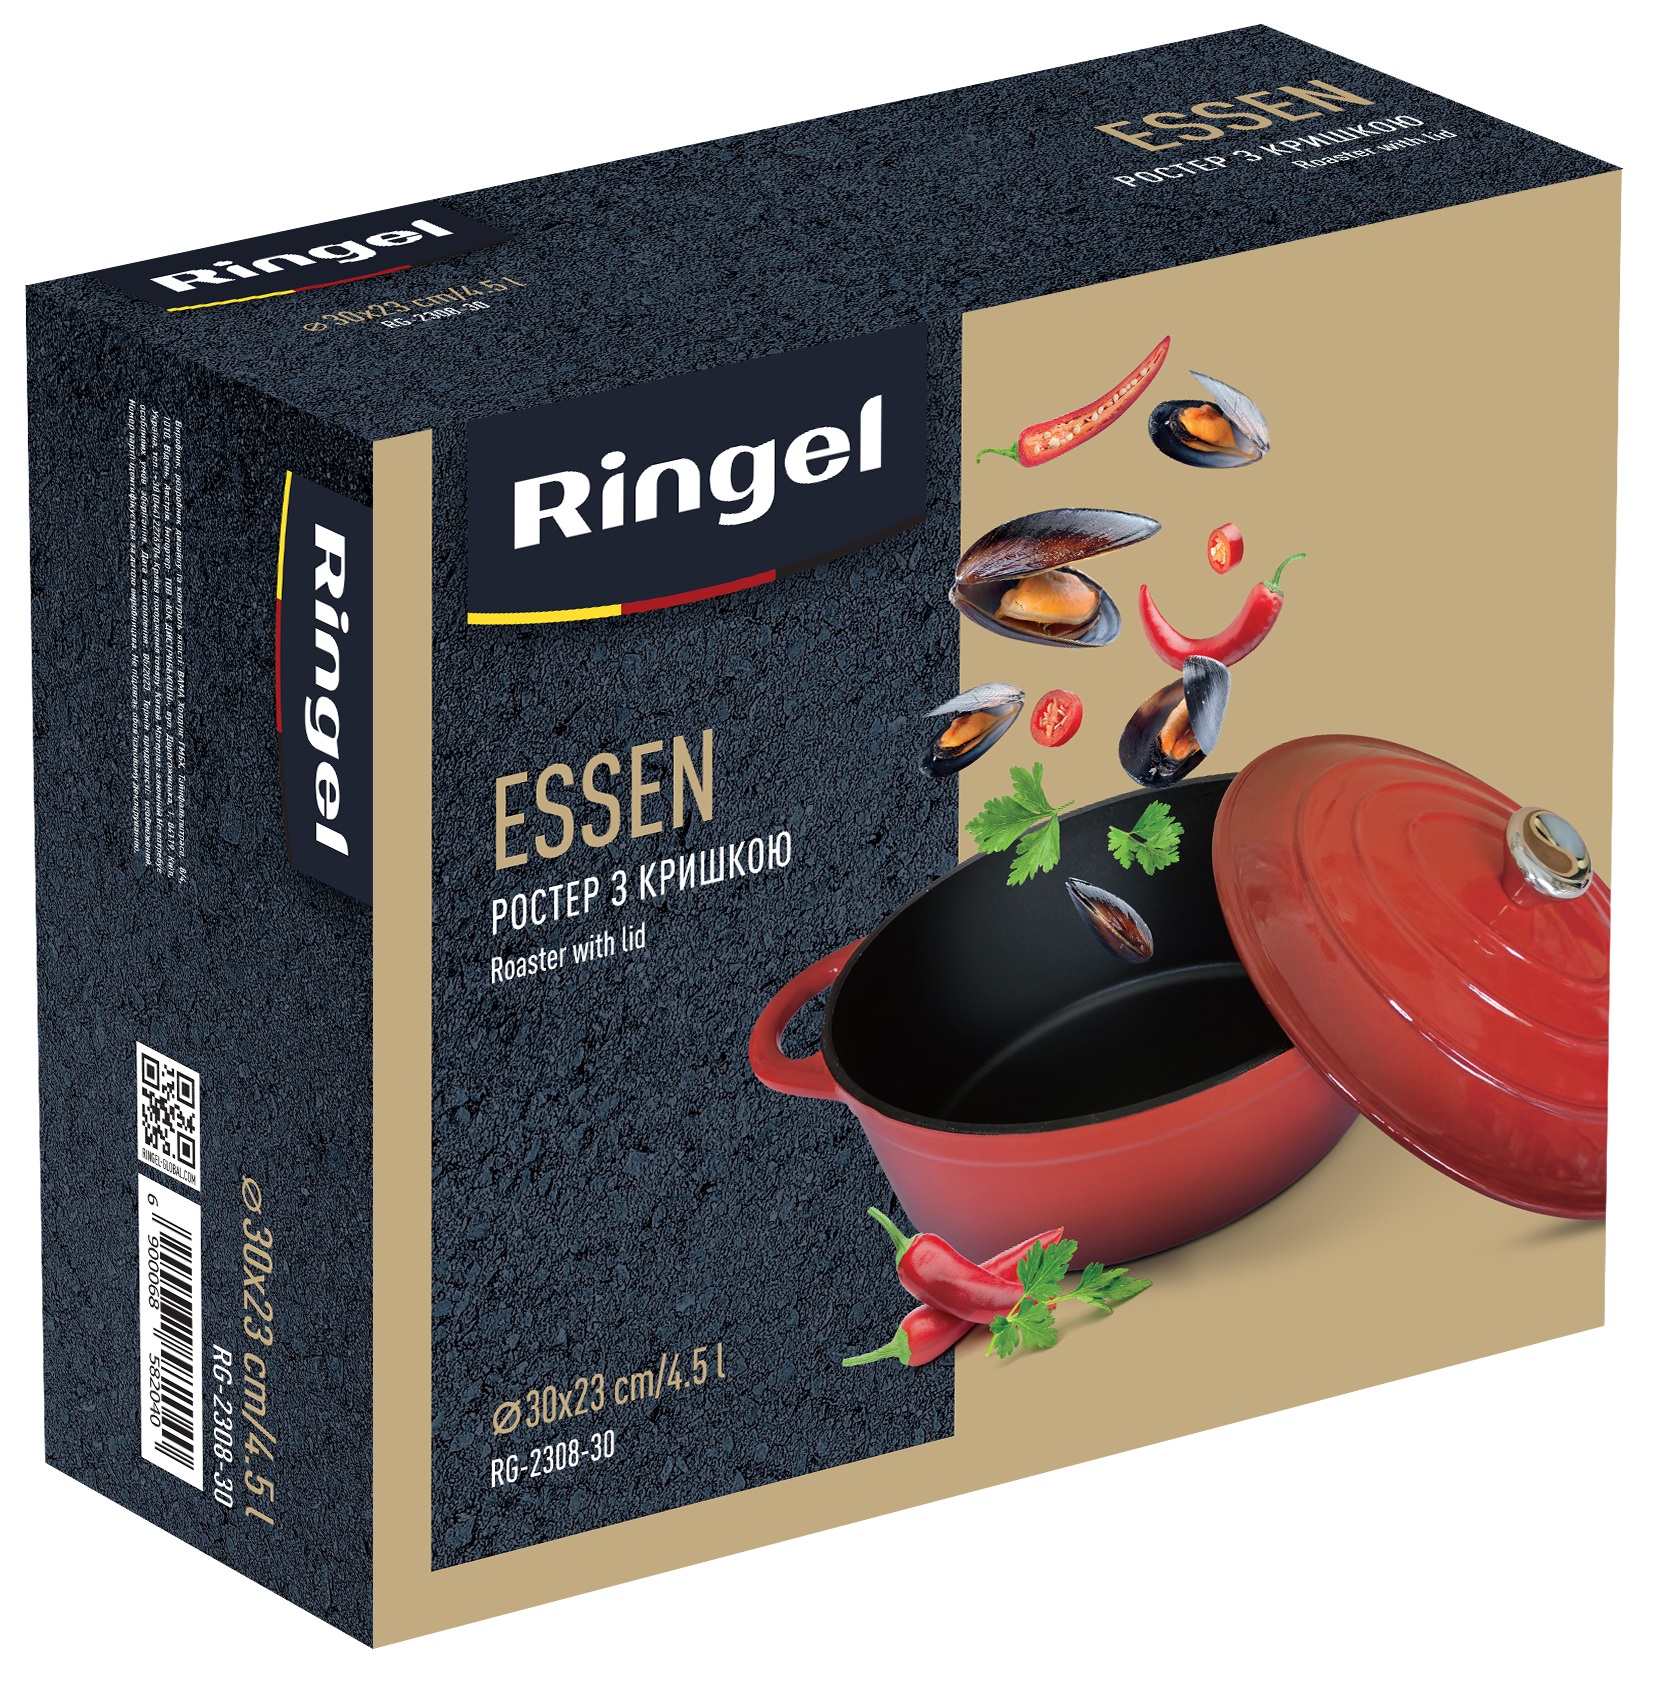 Гусятниця Ростер RINGEL RG-2308-30 Essen 4.5 л в ассортименте